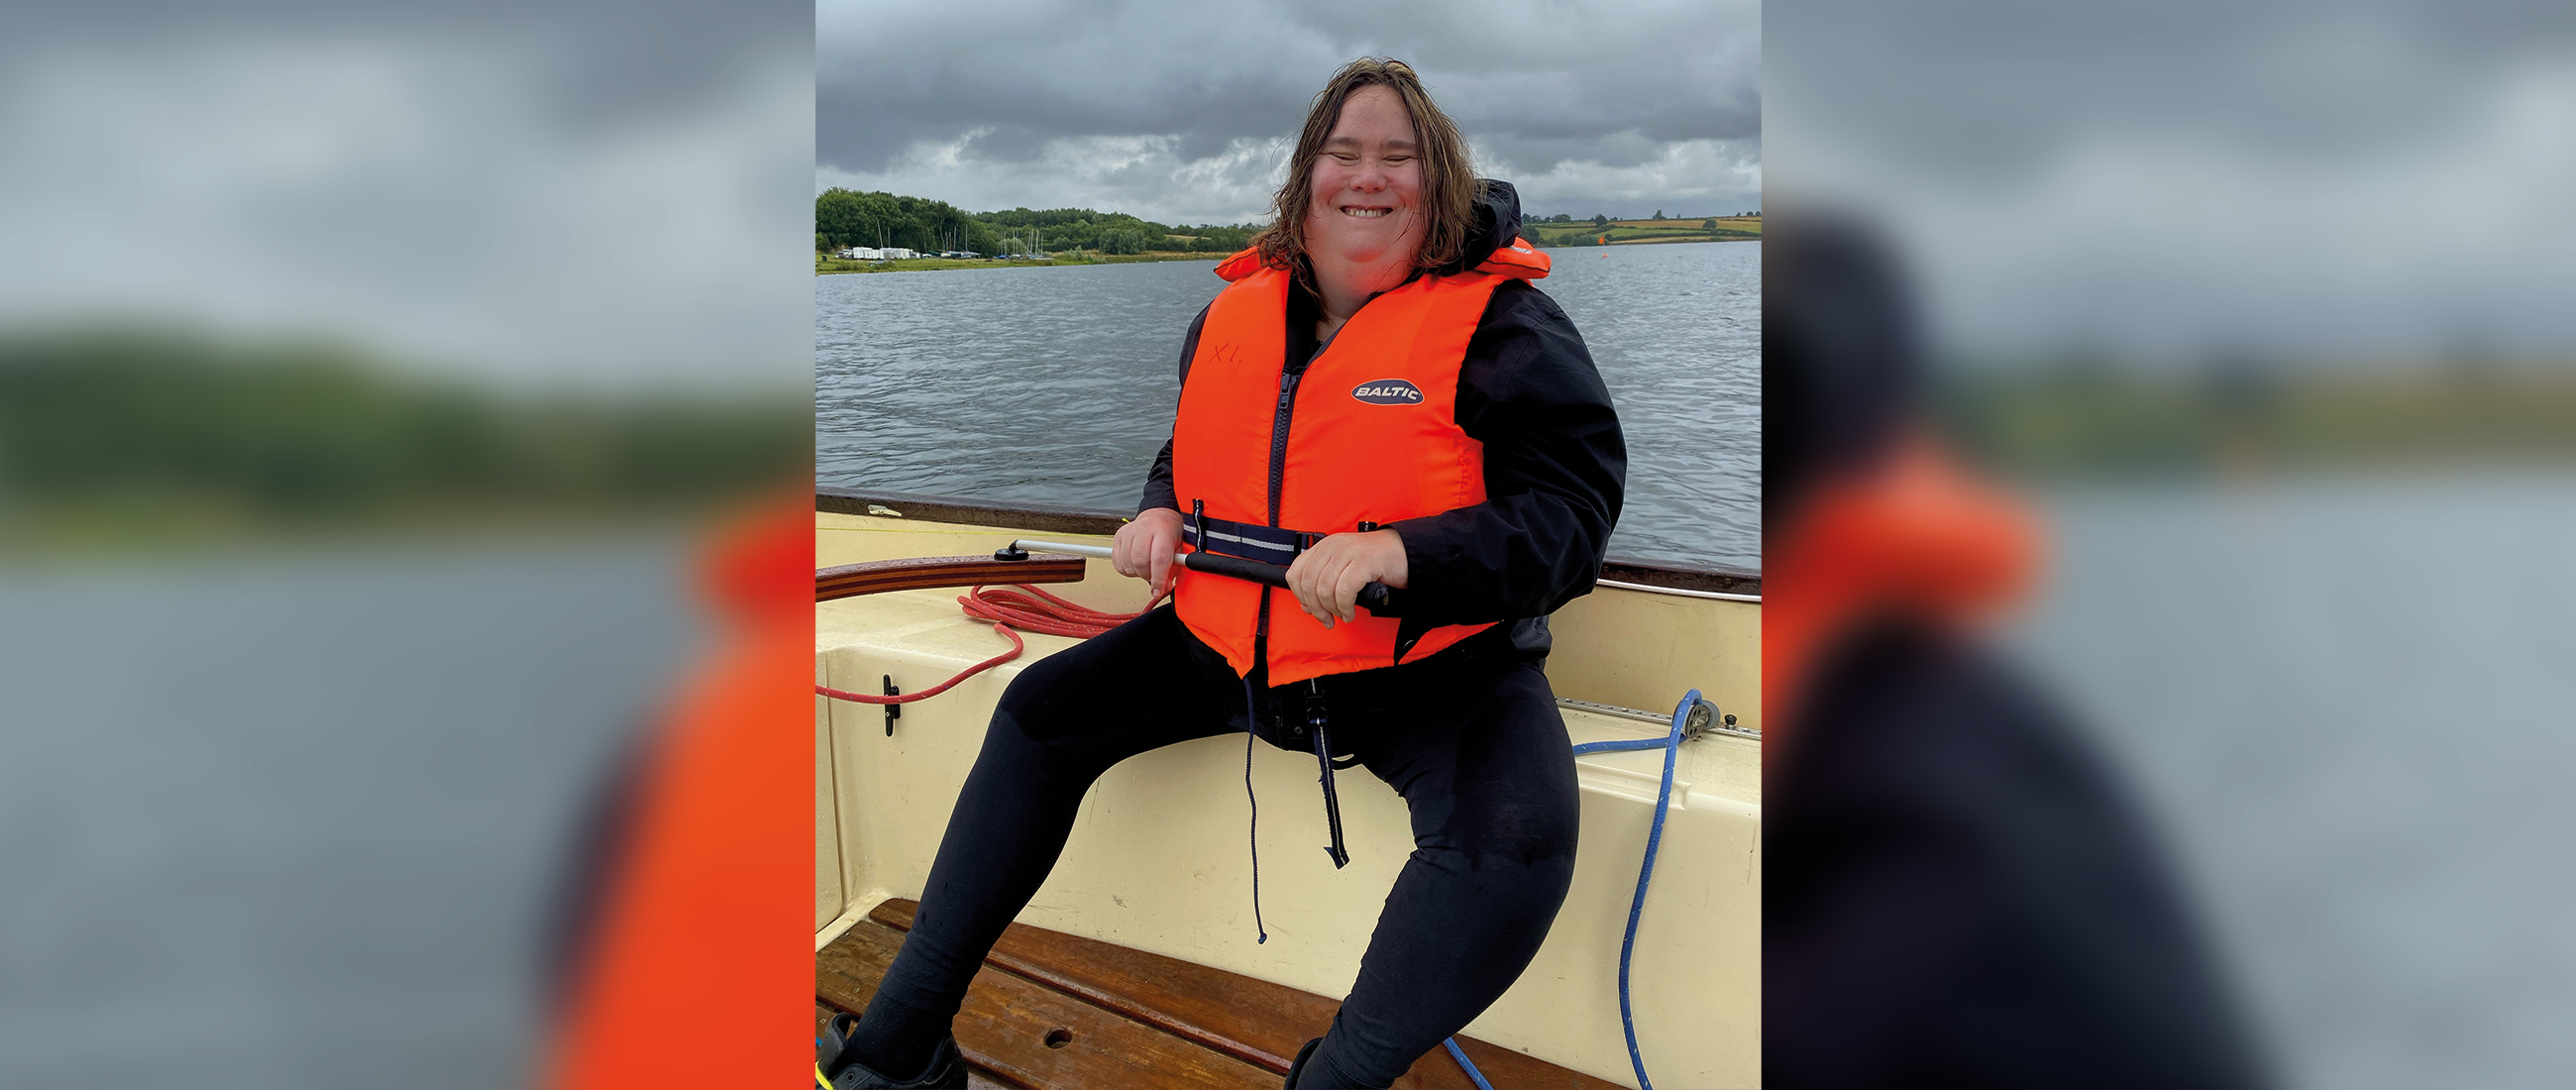 Janice Tillet enjoying a sailing trip